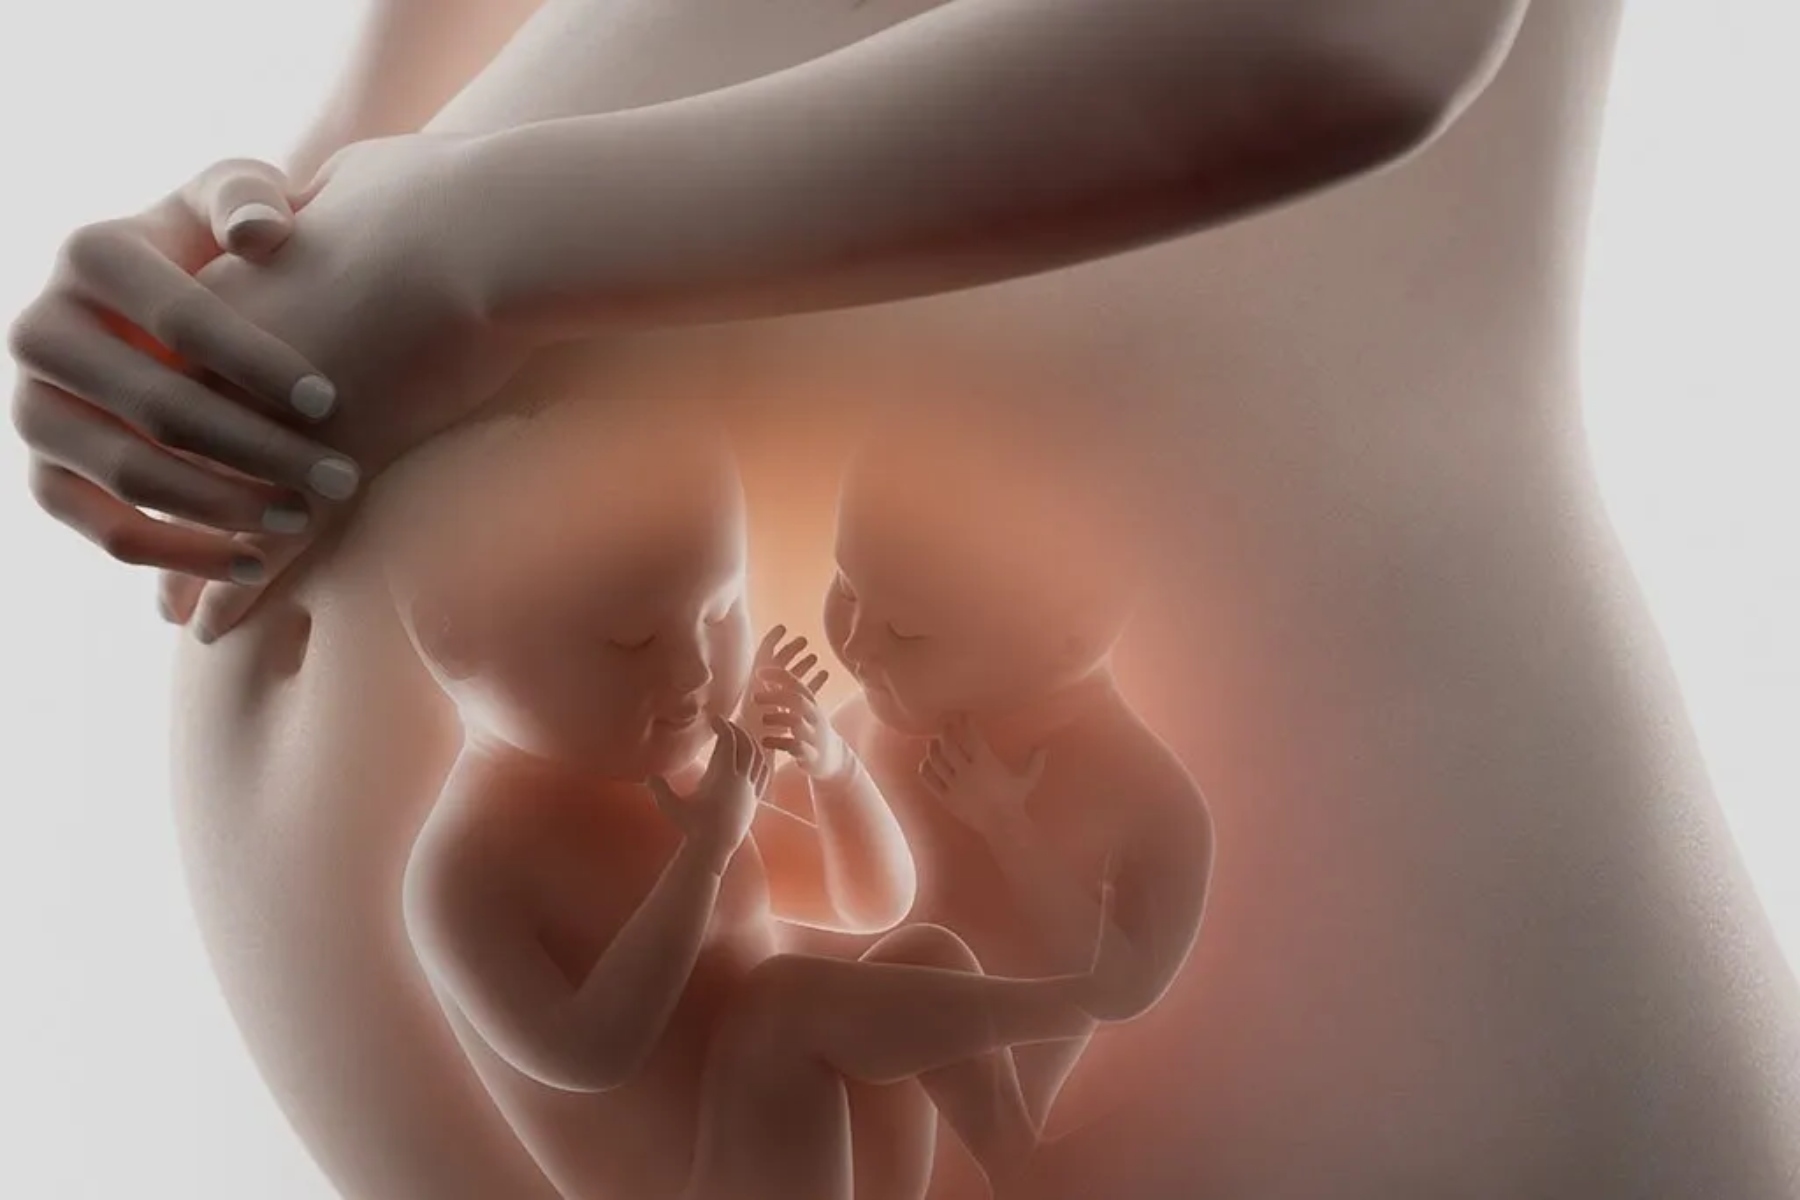 Εγκυμοσύνη δίδυμα: Τι θα περάσει το σώμα σου μετά από γέννηση διδύμων;